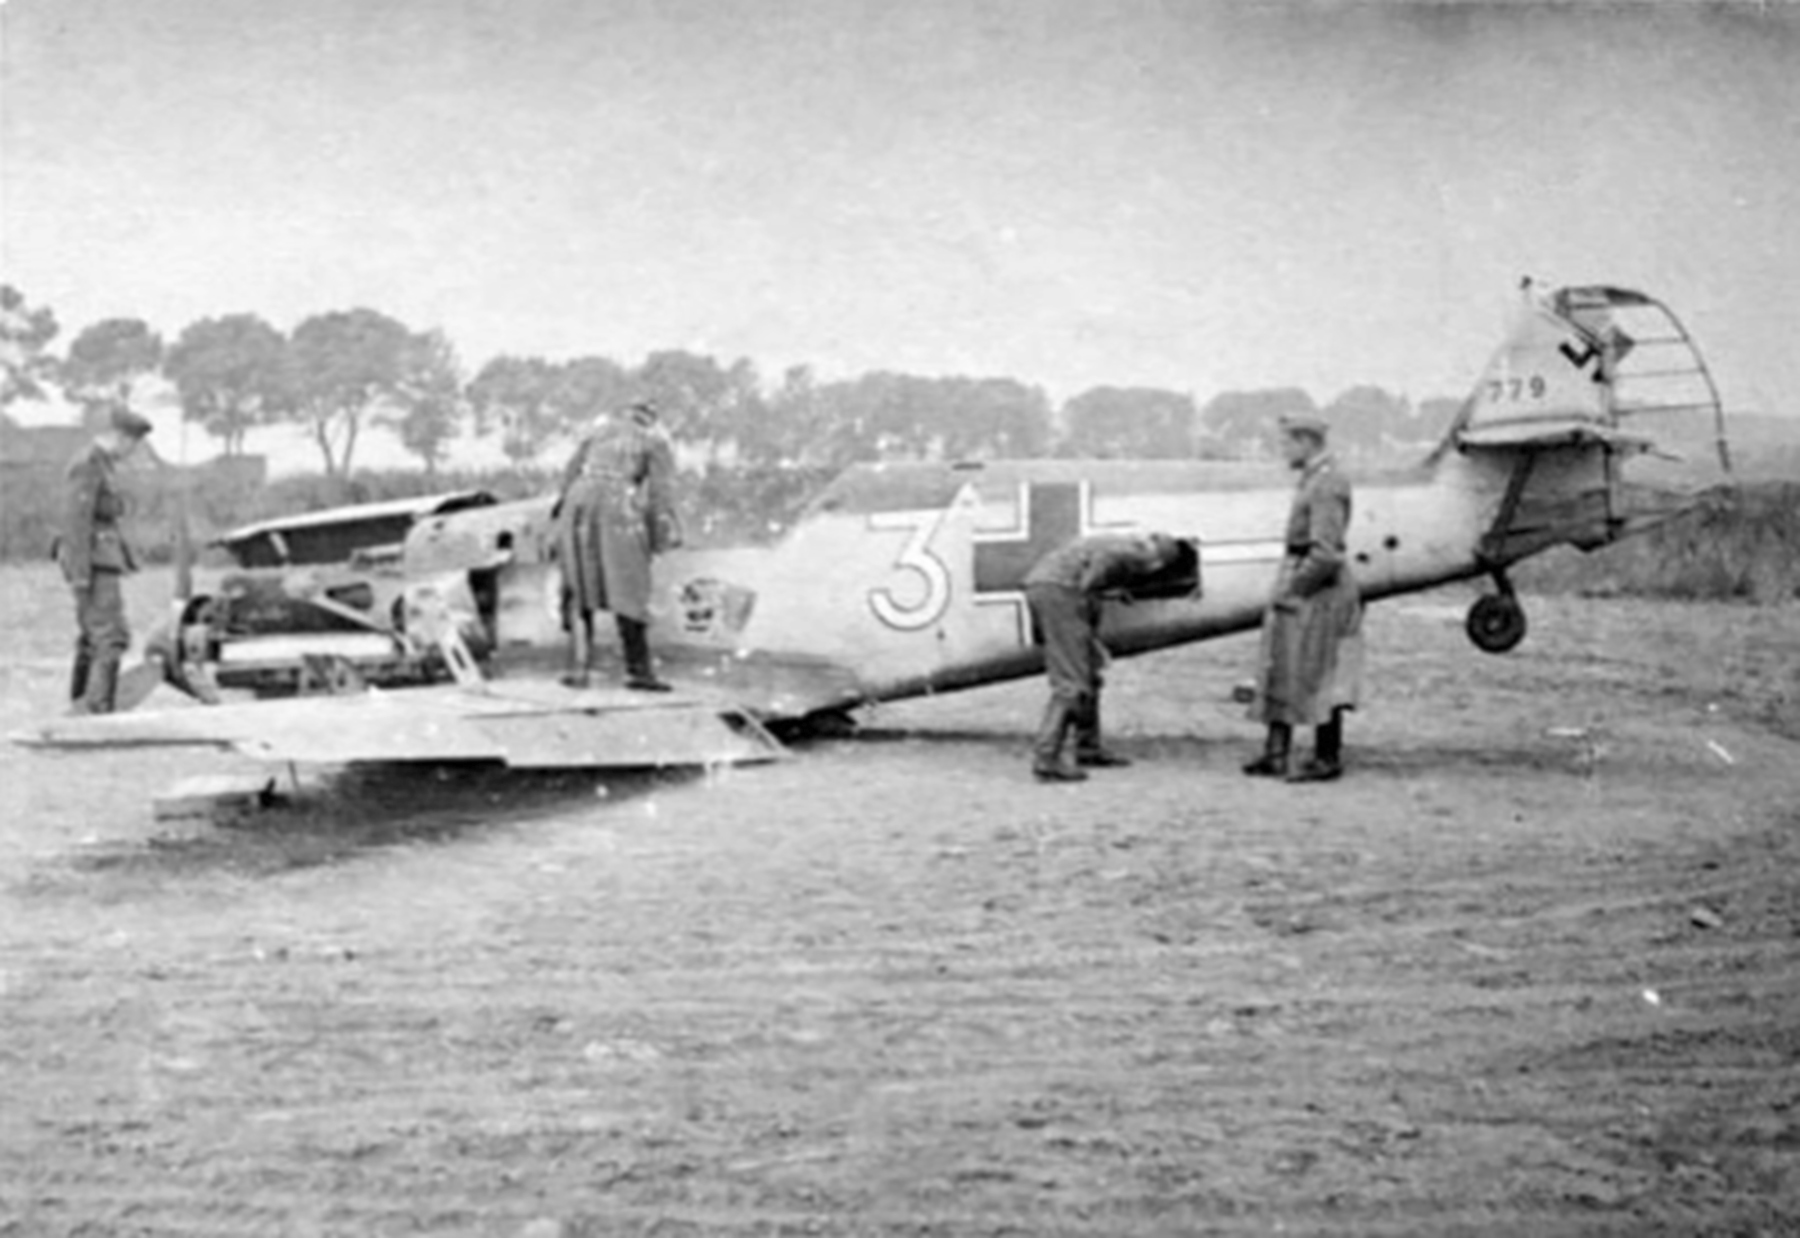 Messerschmitt Bf 109E3 4.JG26 White 3 WNr 779 force landed France 1st June 1940 16